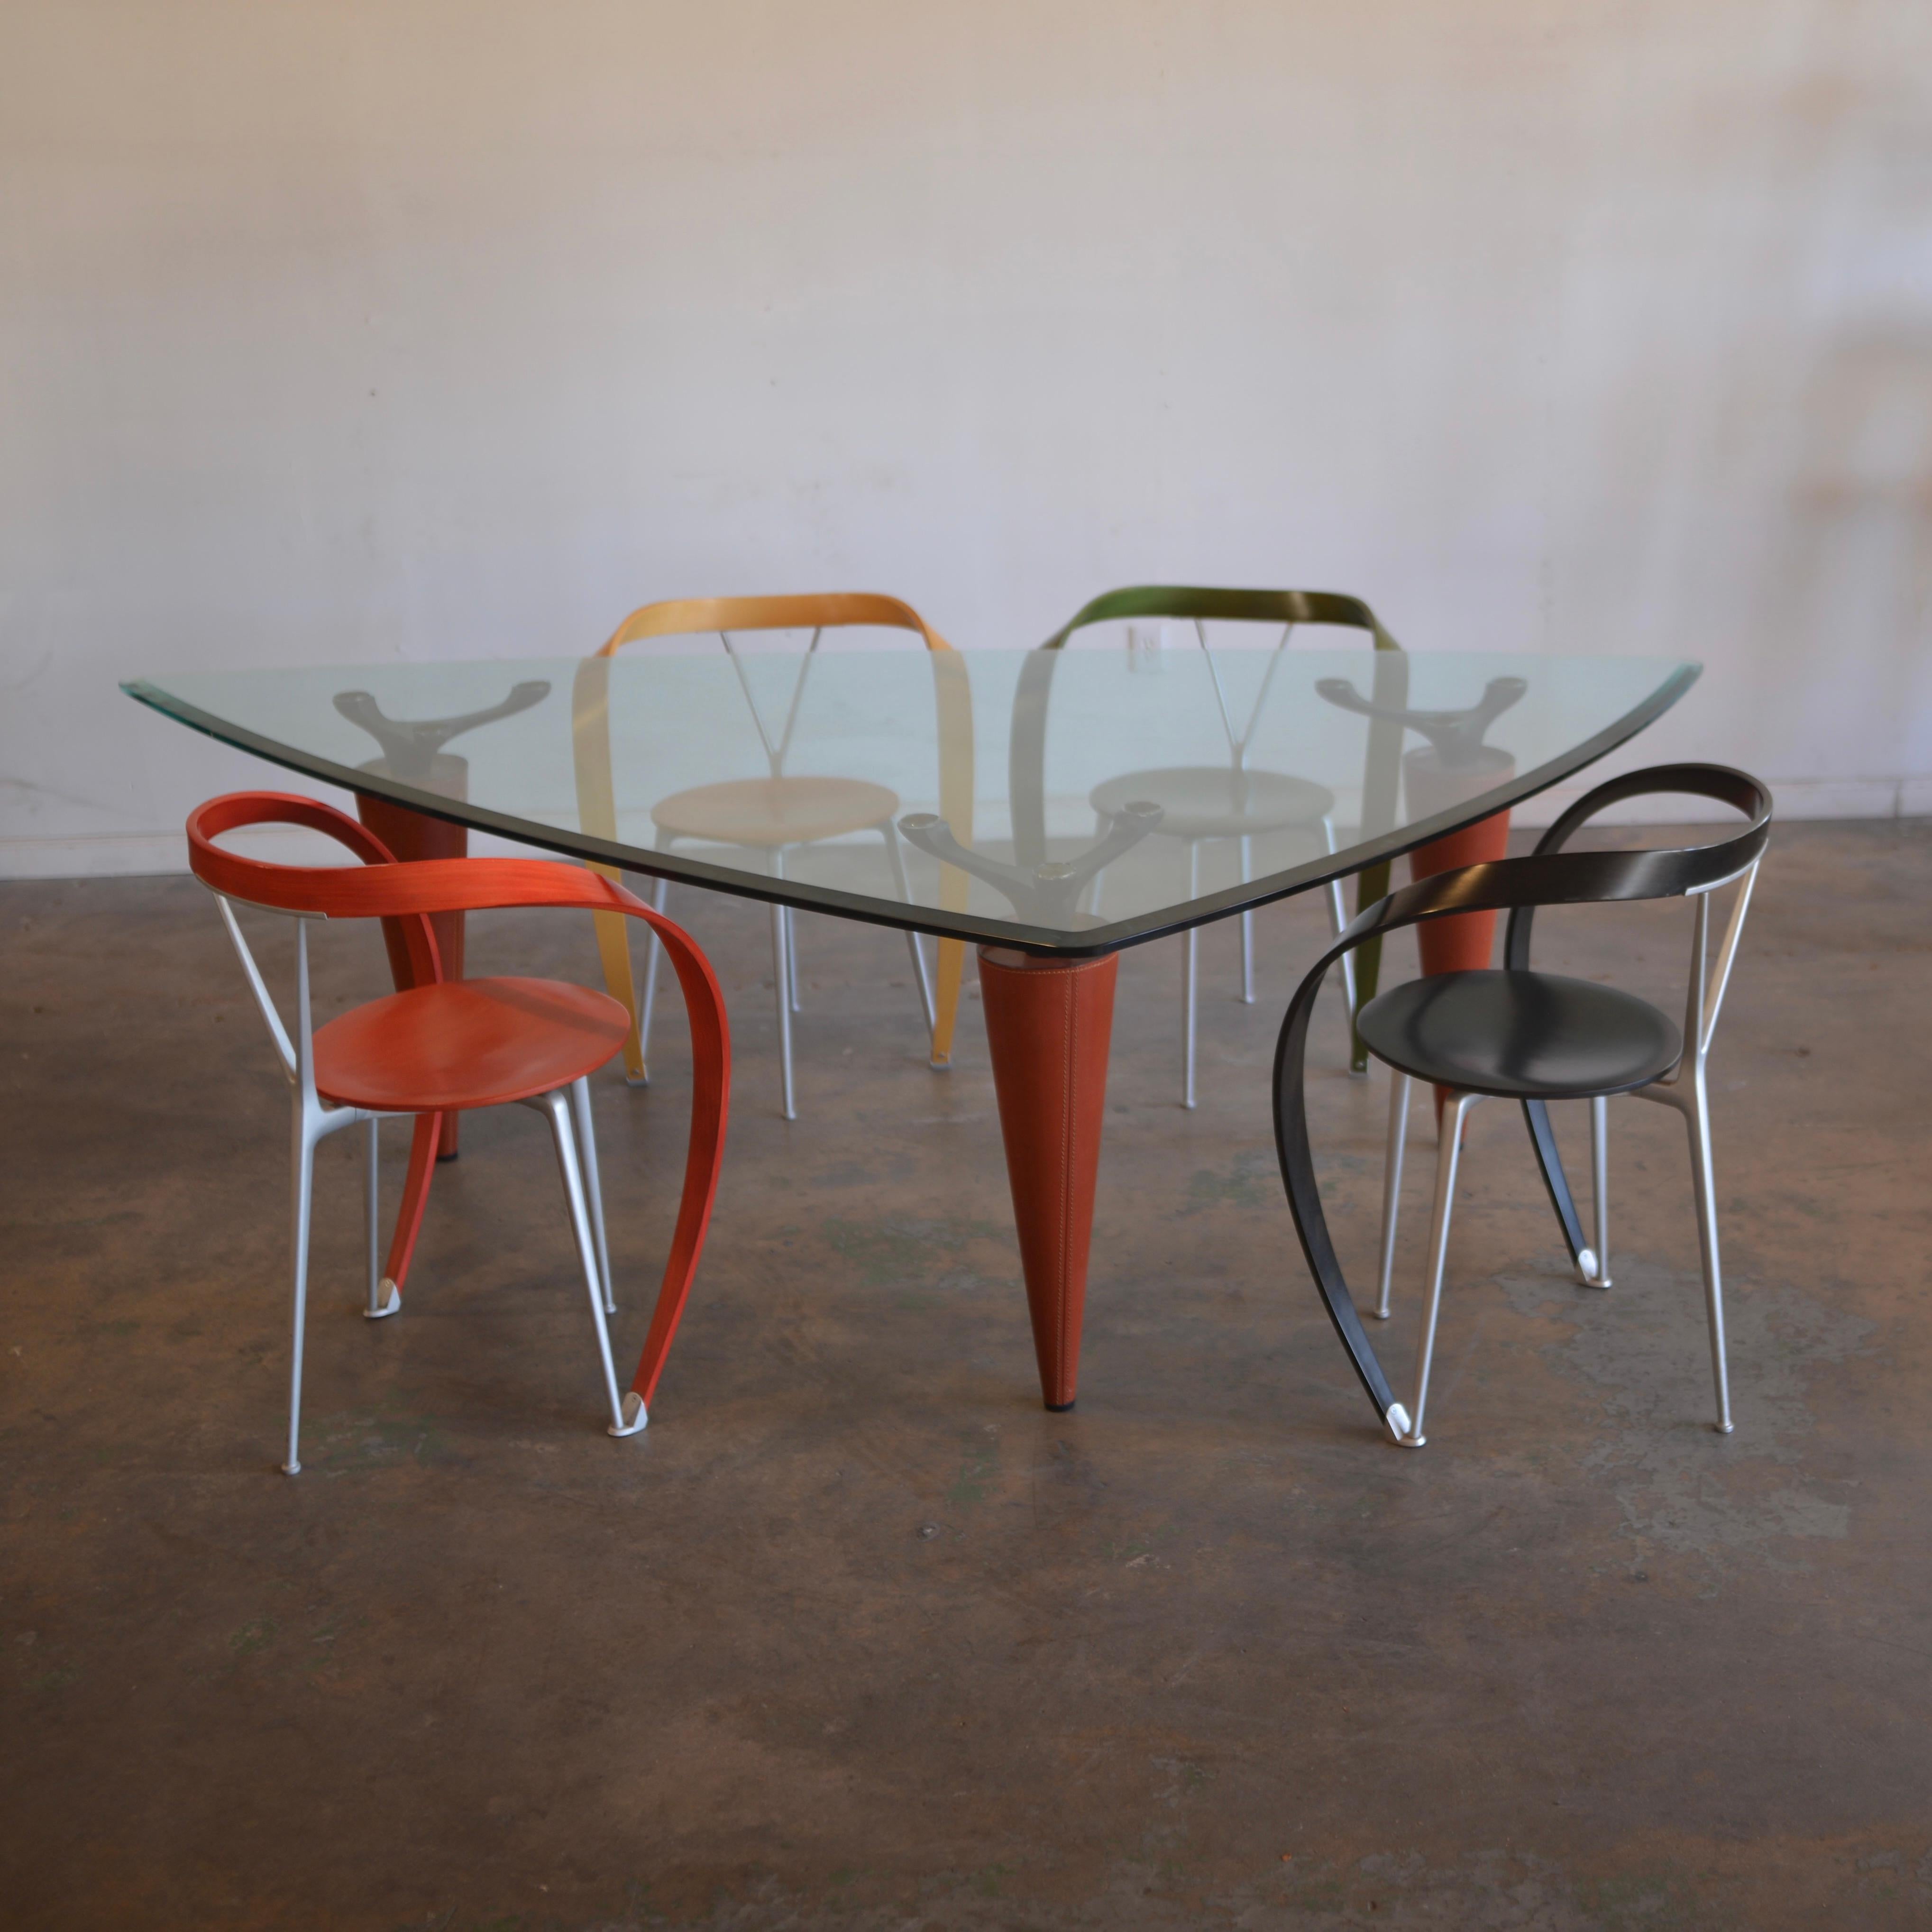 Oskar 705 Scalene Dreieckiger Tisch von Cassina. Entworfen von Isao Hosoe im Jahr 1991. Die Tischplatte aus Kristallglas wird von drei konischen Beinen getragen, die mit russischem, rotem Sattelleder gepolstert sind. Der Tisch wurde nach dem